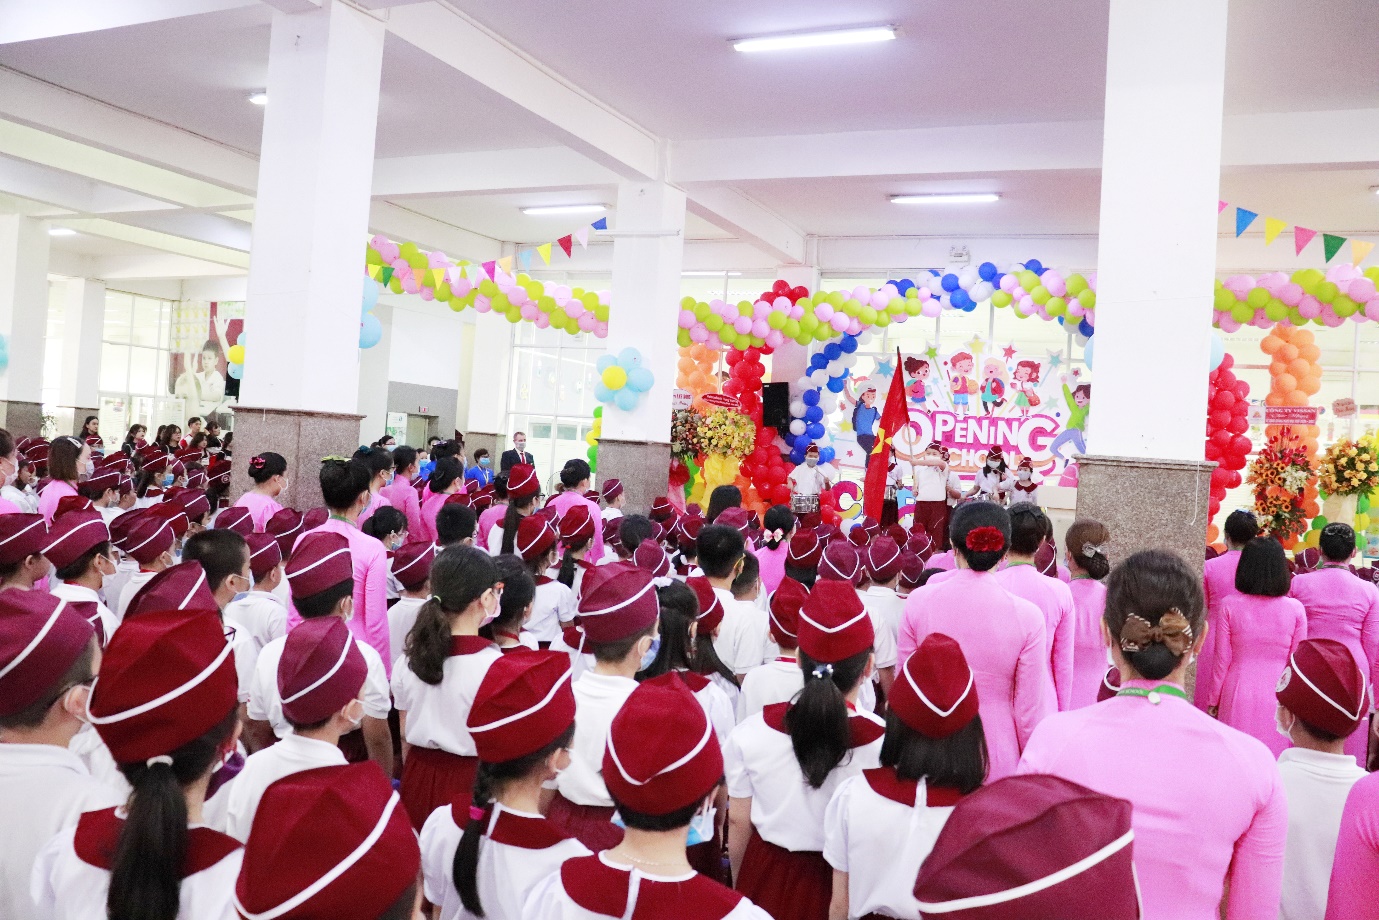 Lễ khai giảng năm học 2020 - 2021 mở ra hành trình năm tuổi thứ 22 của Asian School